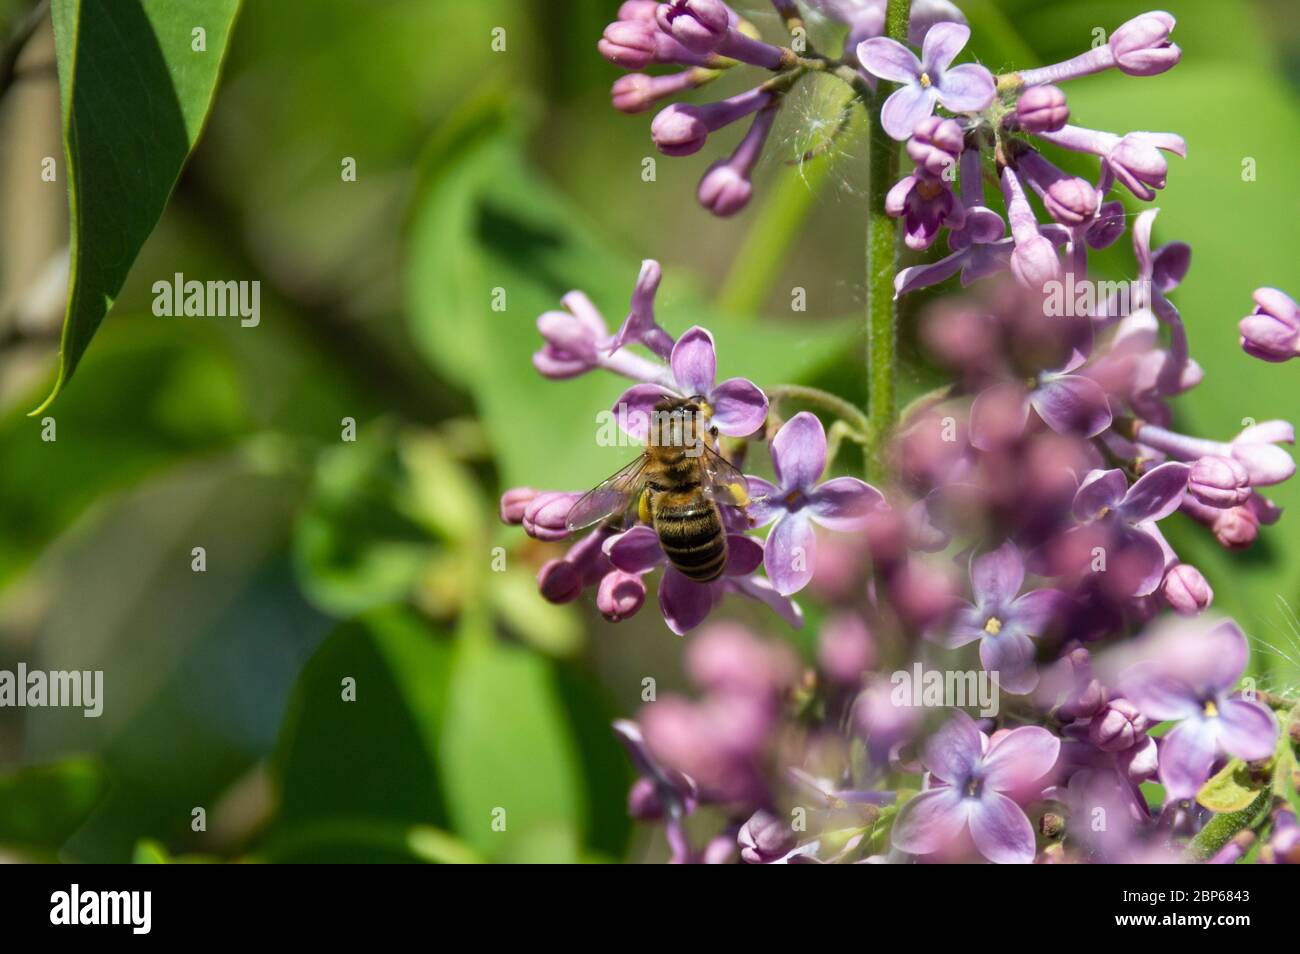 Flores de lila púrpura y abejas europeas que recolectan néctar y polinizan el arbusto de lila. Foto de stock